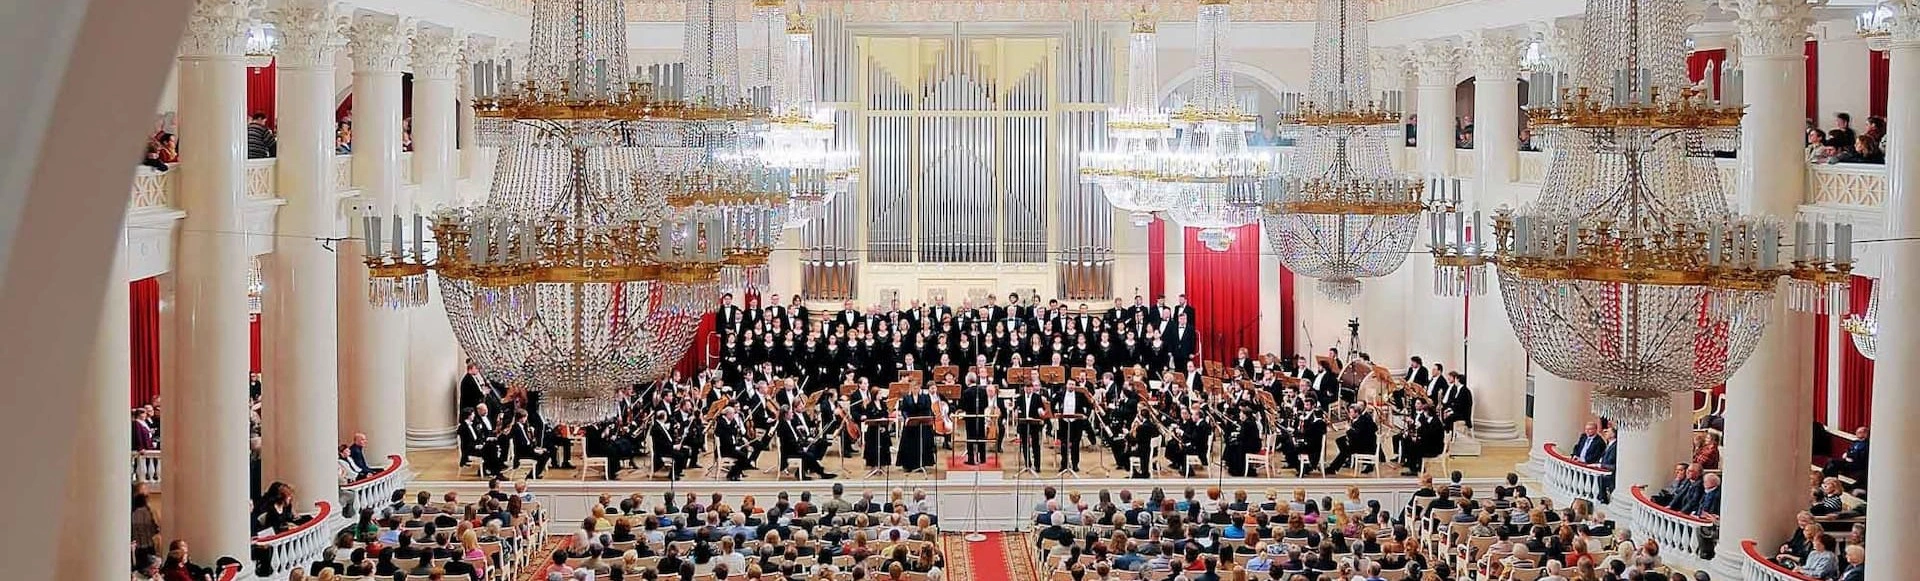 Заслуженный коллектив России академический симфонический оркестр филармонии